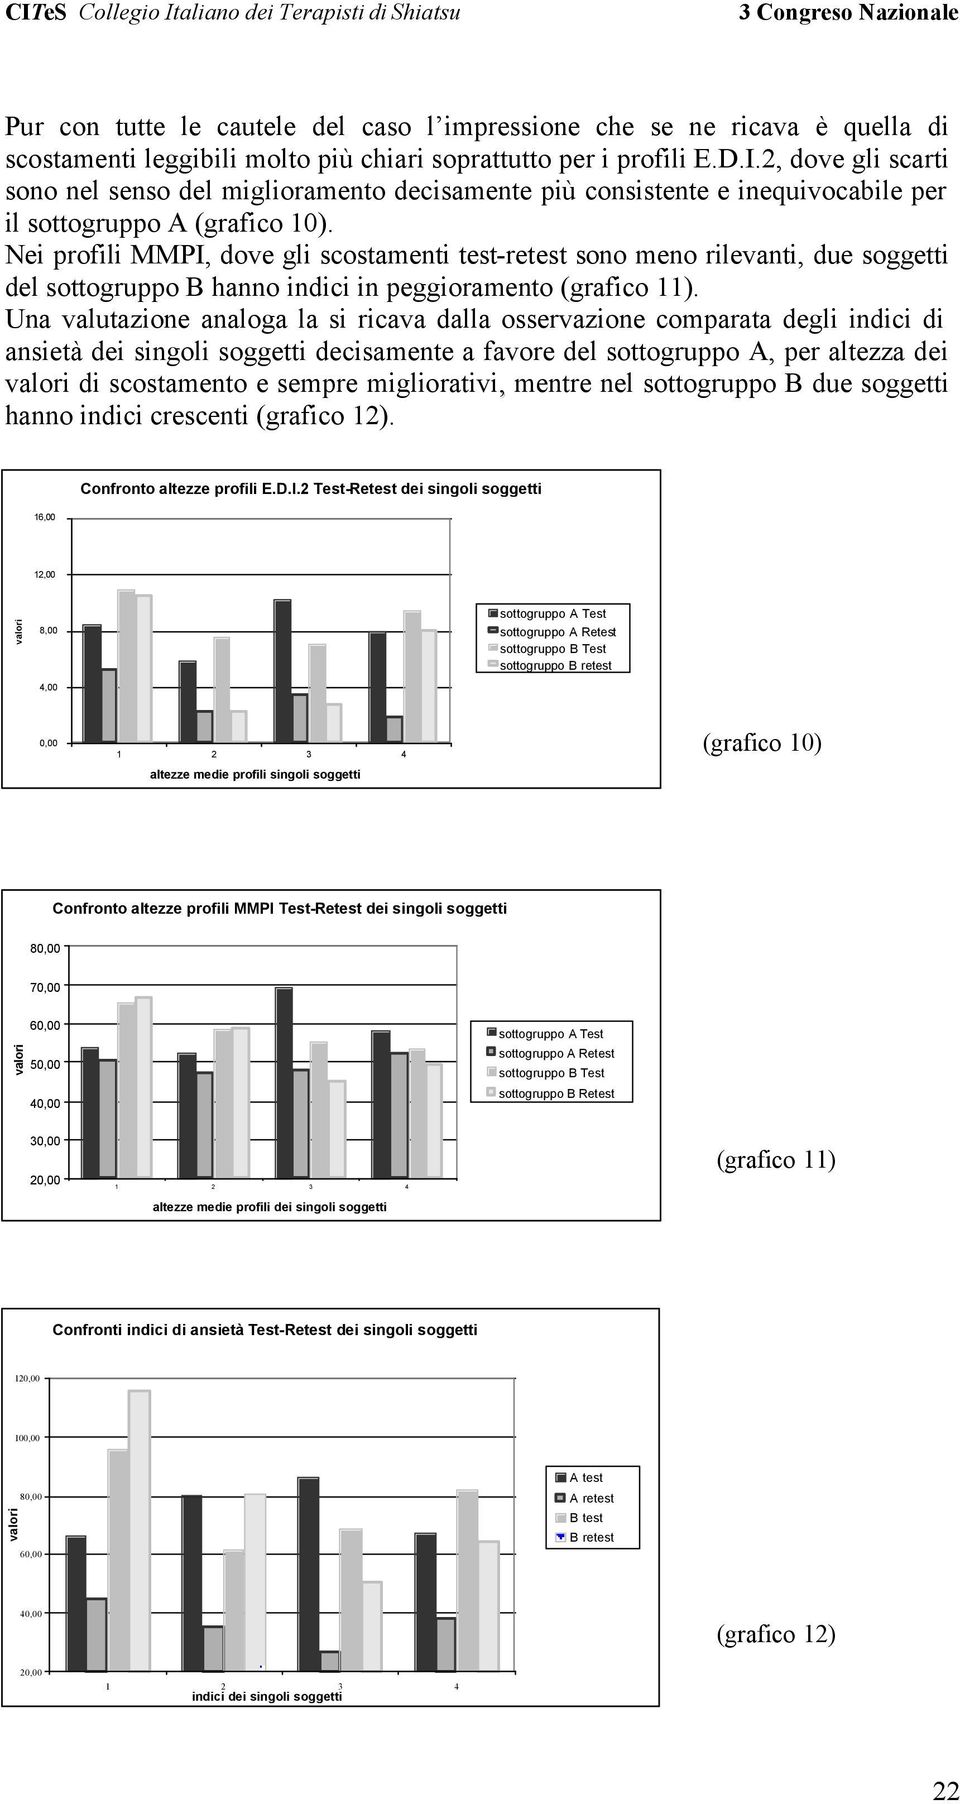 Nei profili MMPI, dove gli scostamenti test-retest sono meno rilevanti, due soggetti del sottogruppo B hanno indici in peggioramento (grafico 11).